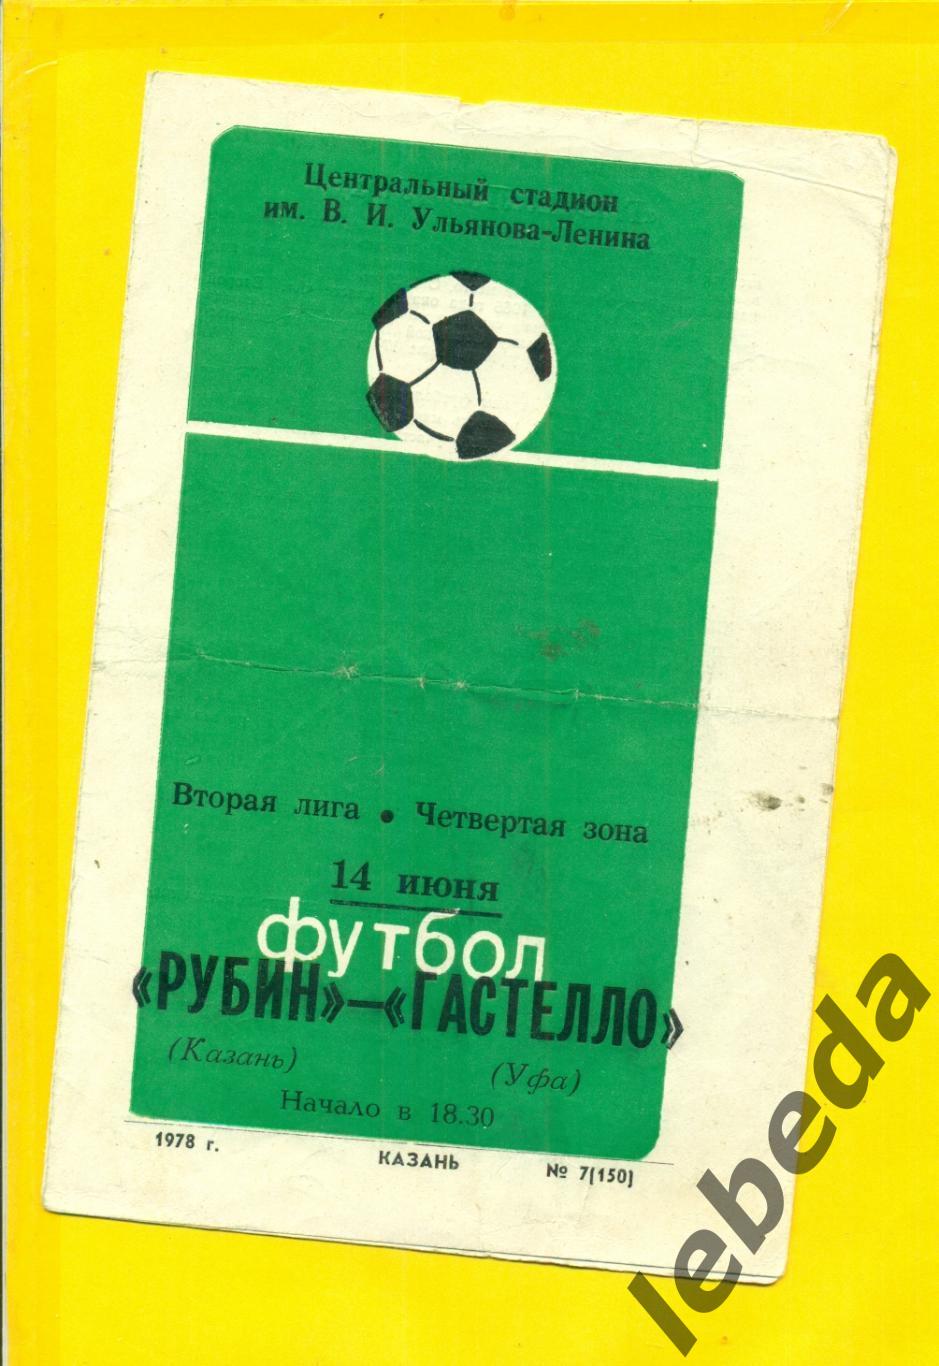 Рубин Казань - Гастелло Уфа - 1978 г.(14.06.78.)